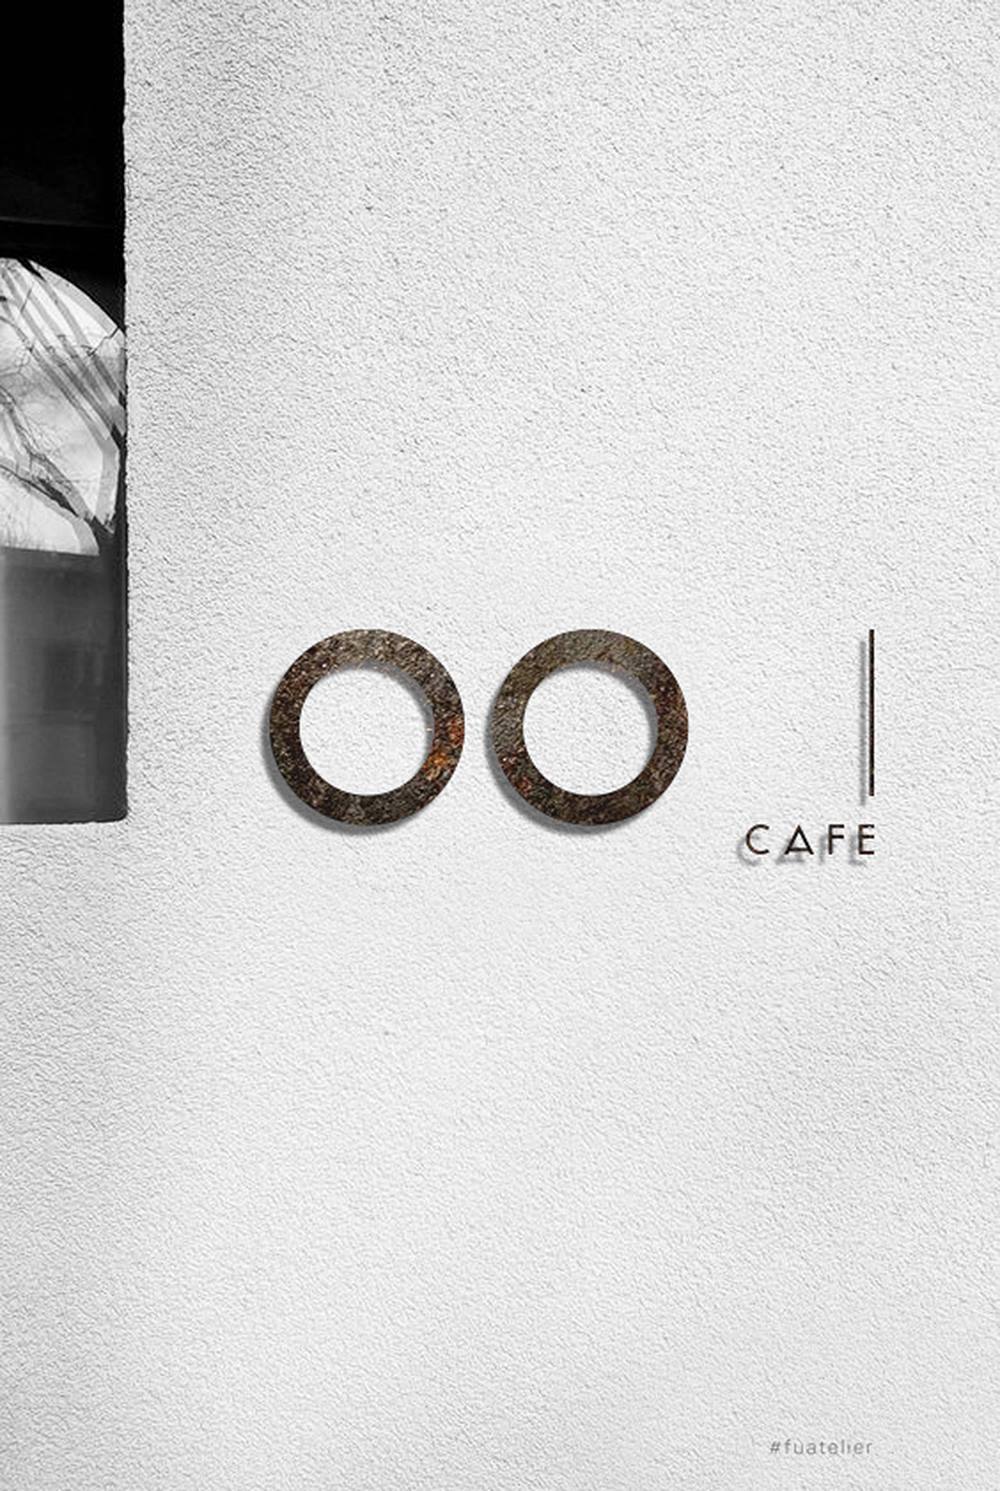 Đam mê phong cách tối giản thì nhớ lưu lại địa chỉ của OO Cafe Huế 2